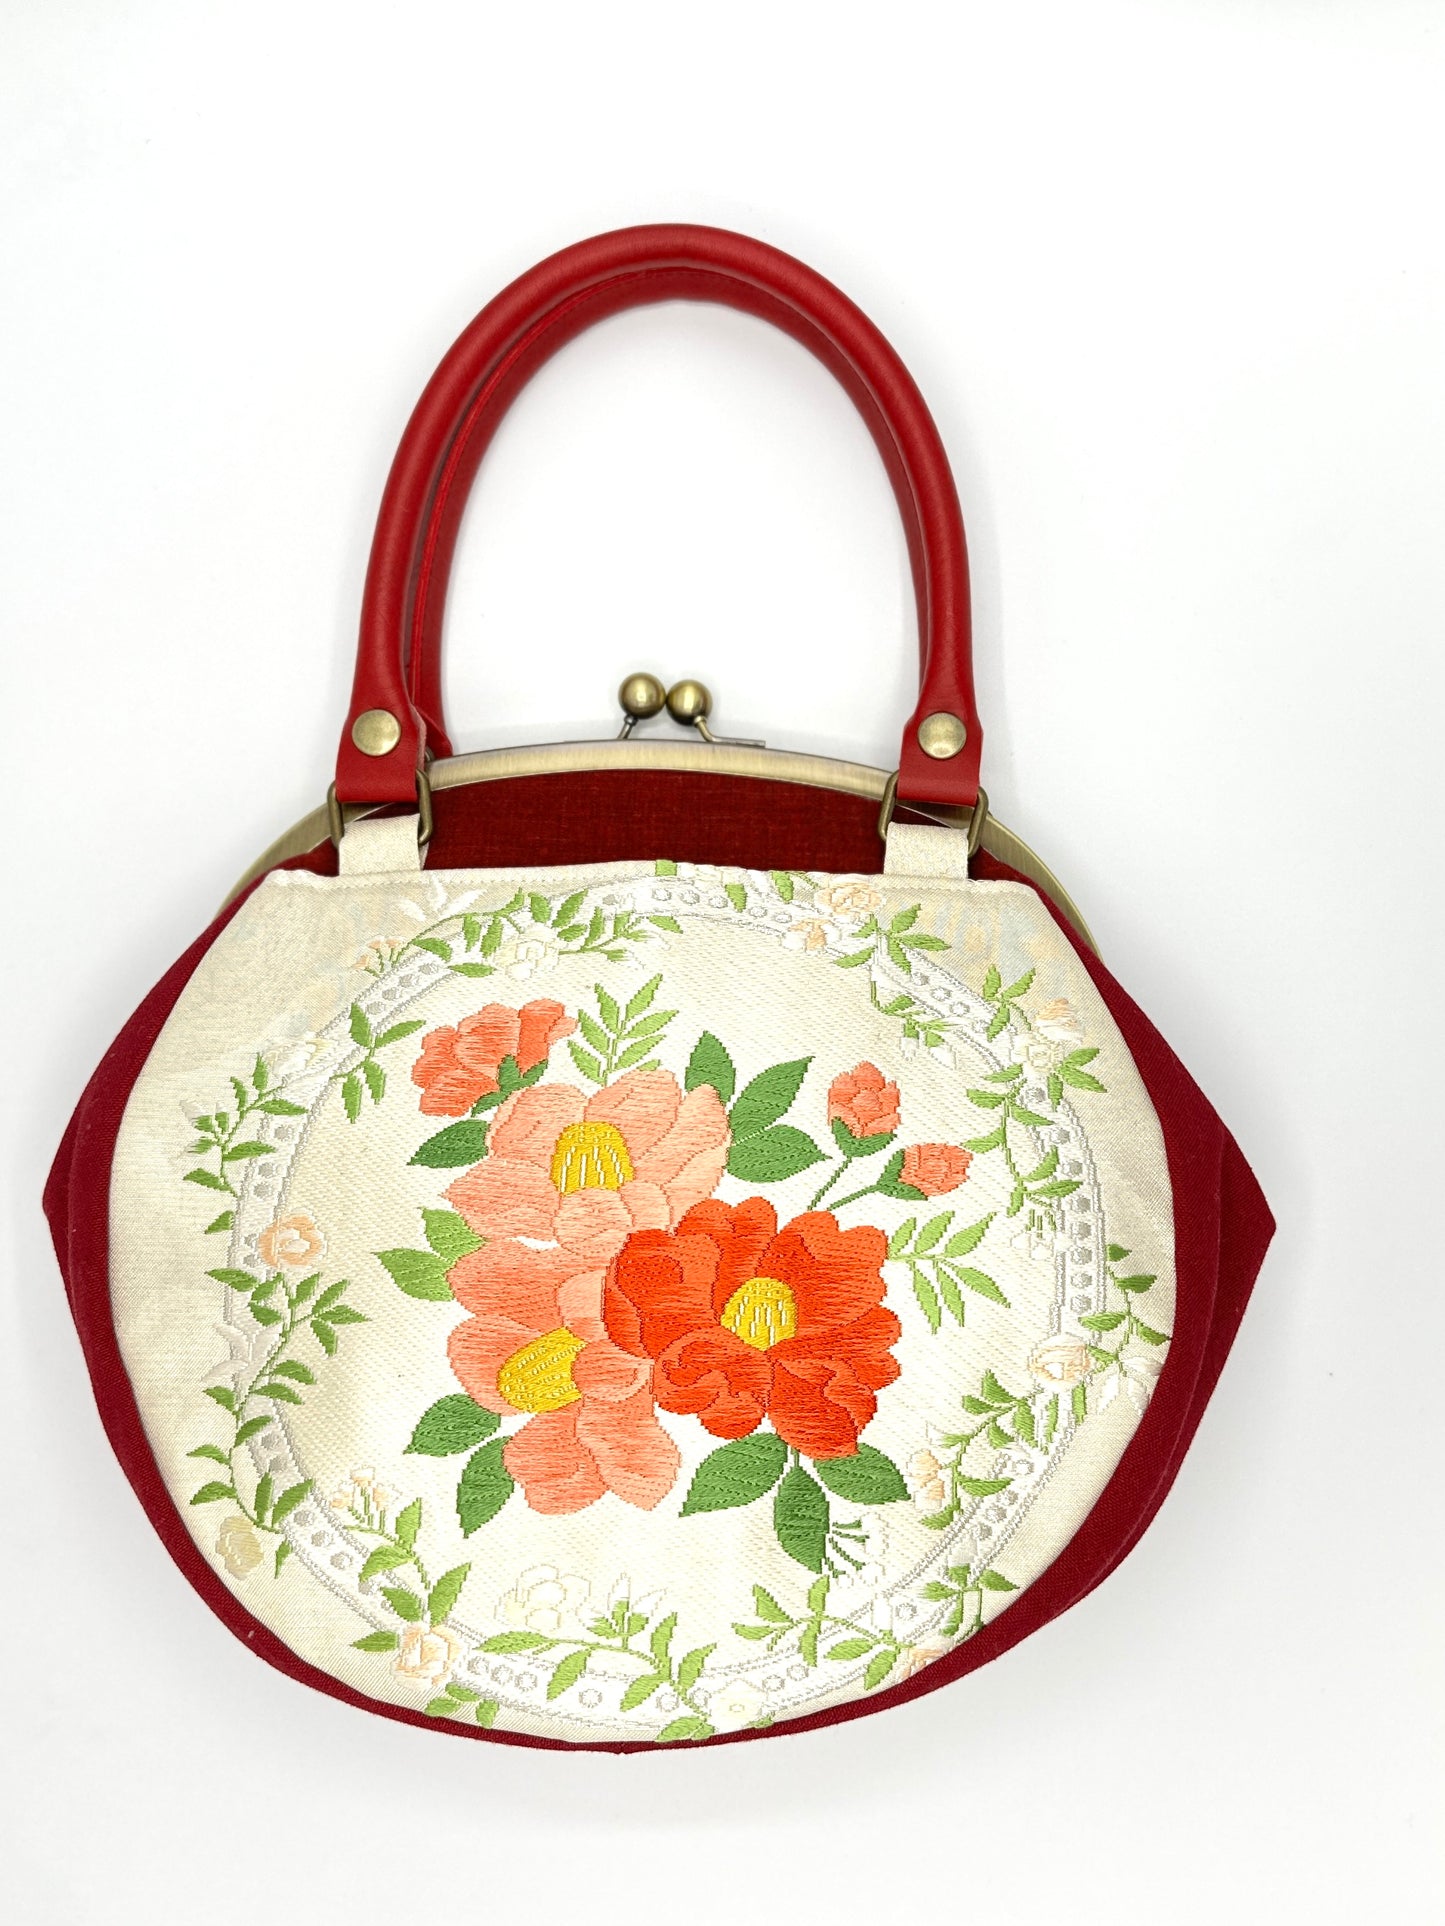 【Rood/Camellia】 Gamaguchi-en/handtas, koppeling, zakje, Japanse tas, schoudertas, Japanse geschenken